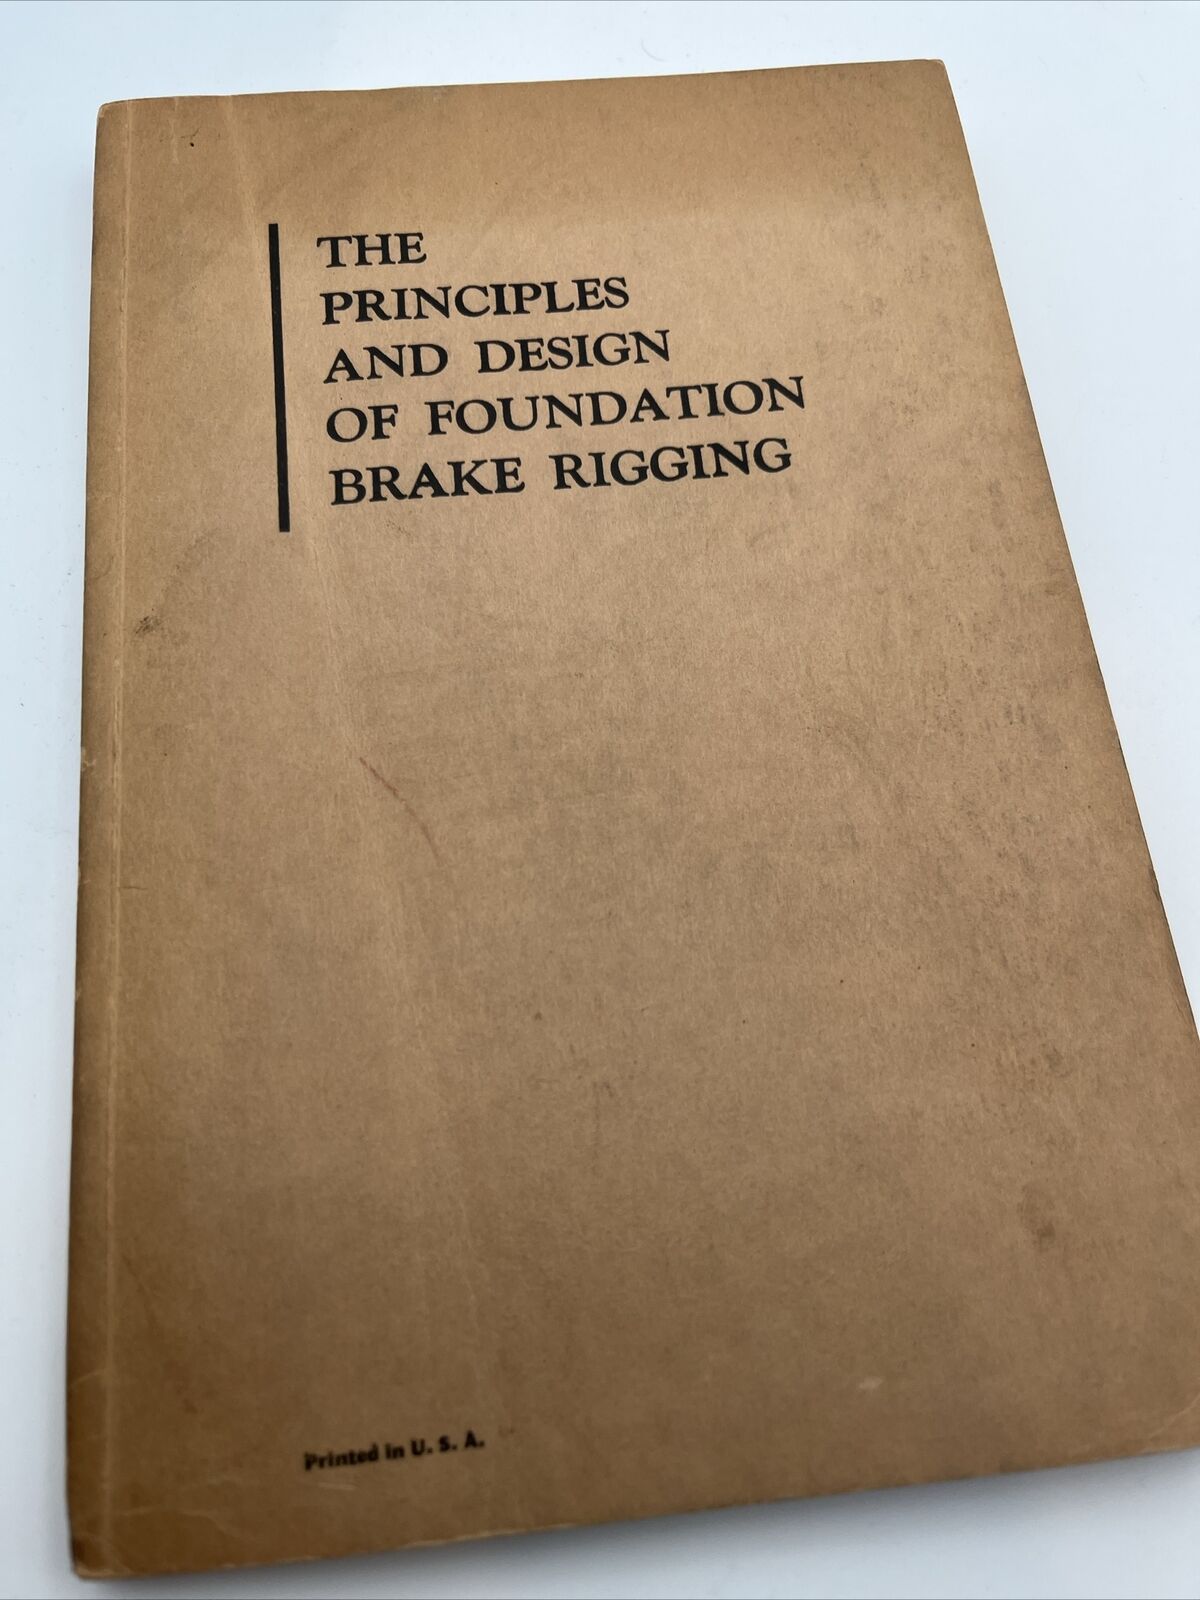 The Principles and Design of Foundation Brake Rigging 1929 Train Rail Schematics